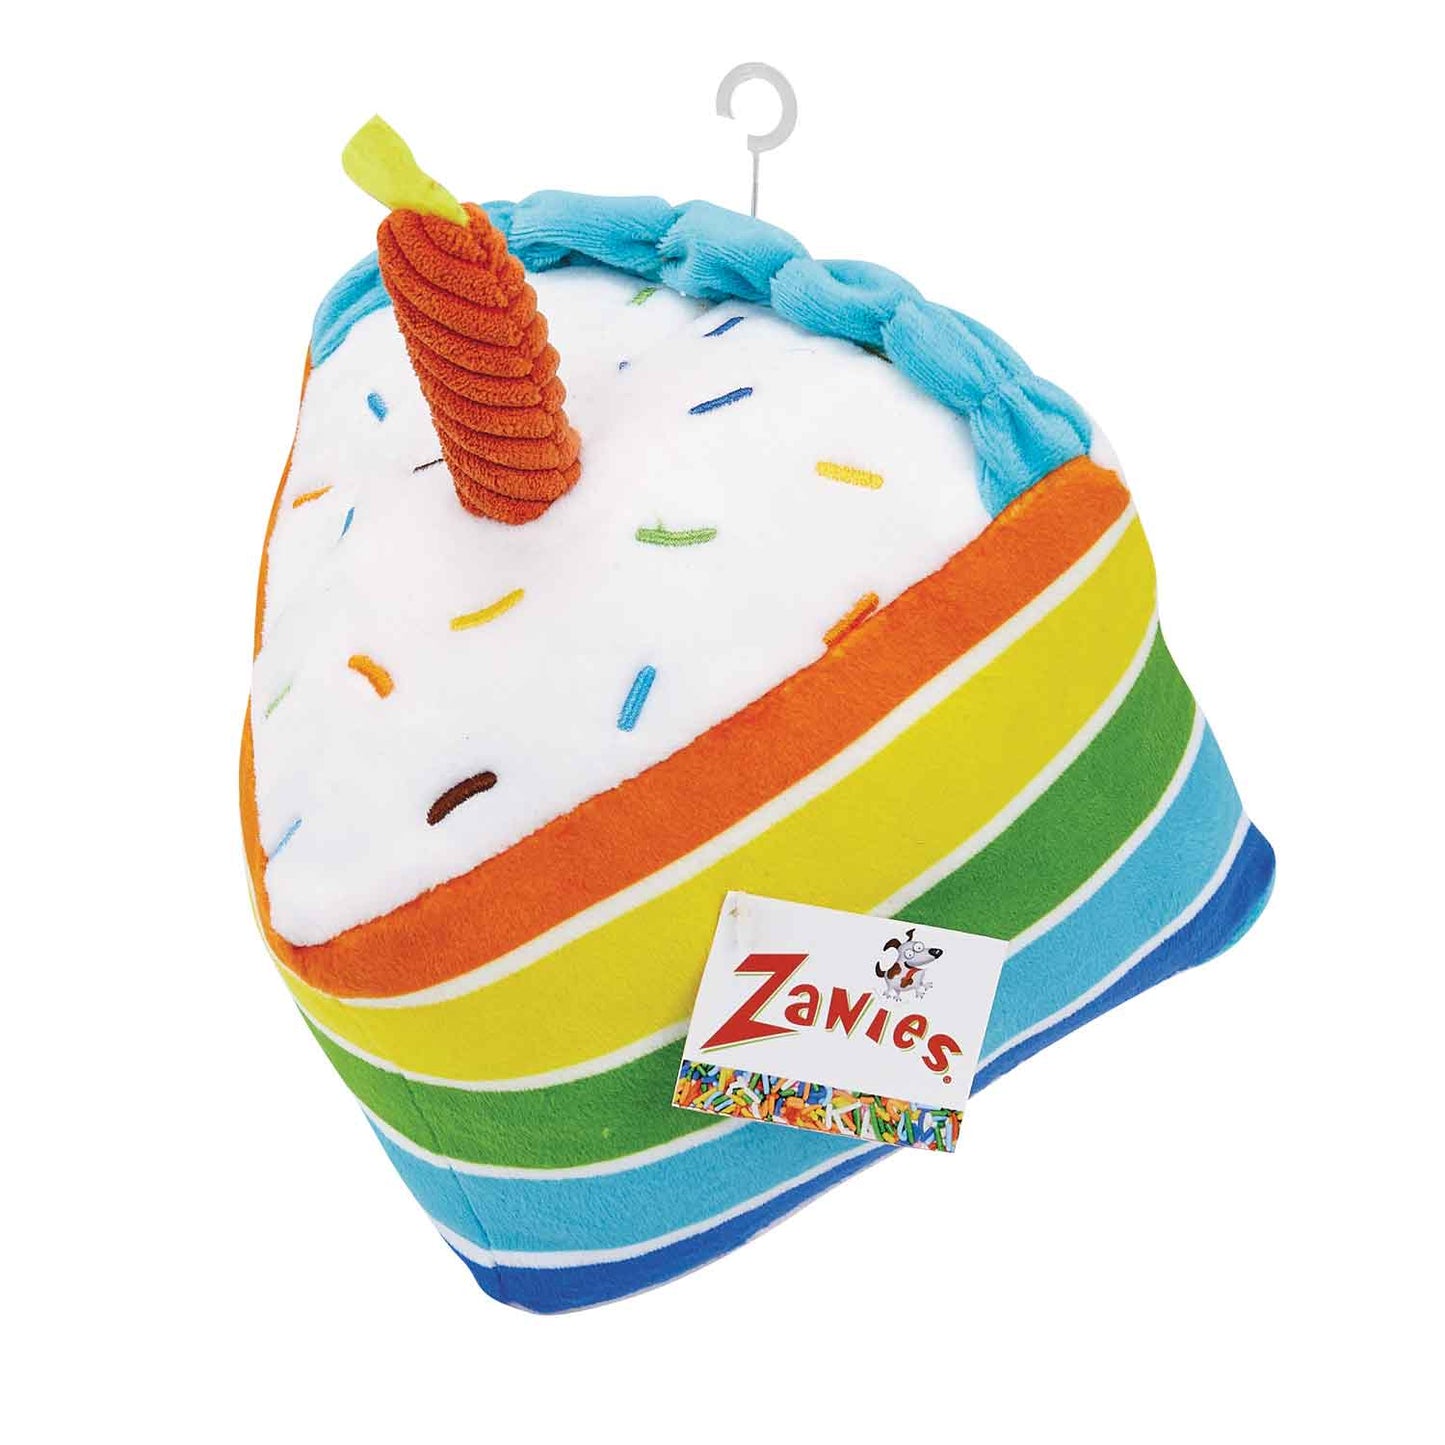 Zanies Rainbow Birthday Cake, Dog Toy